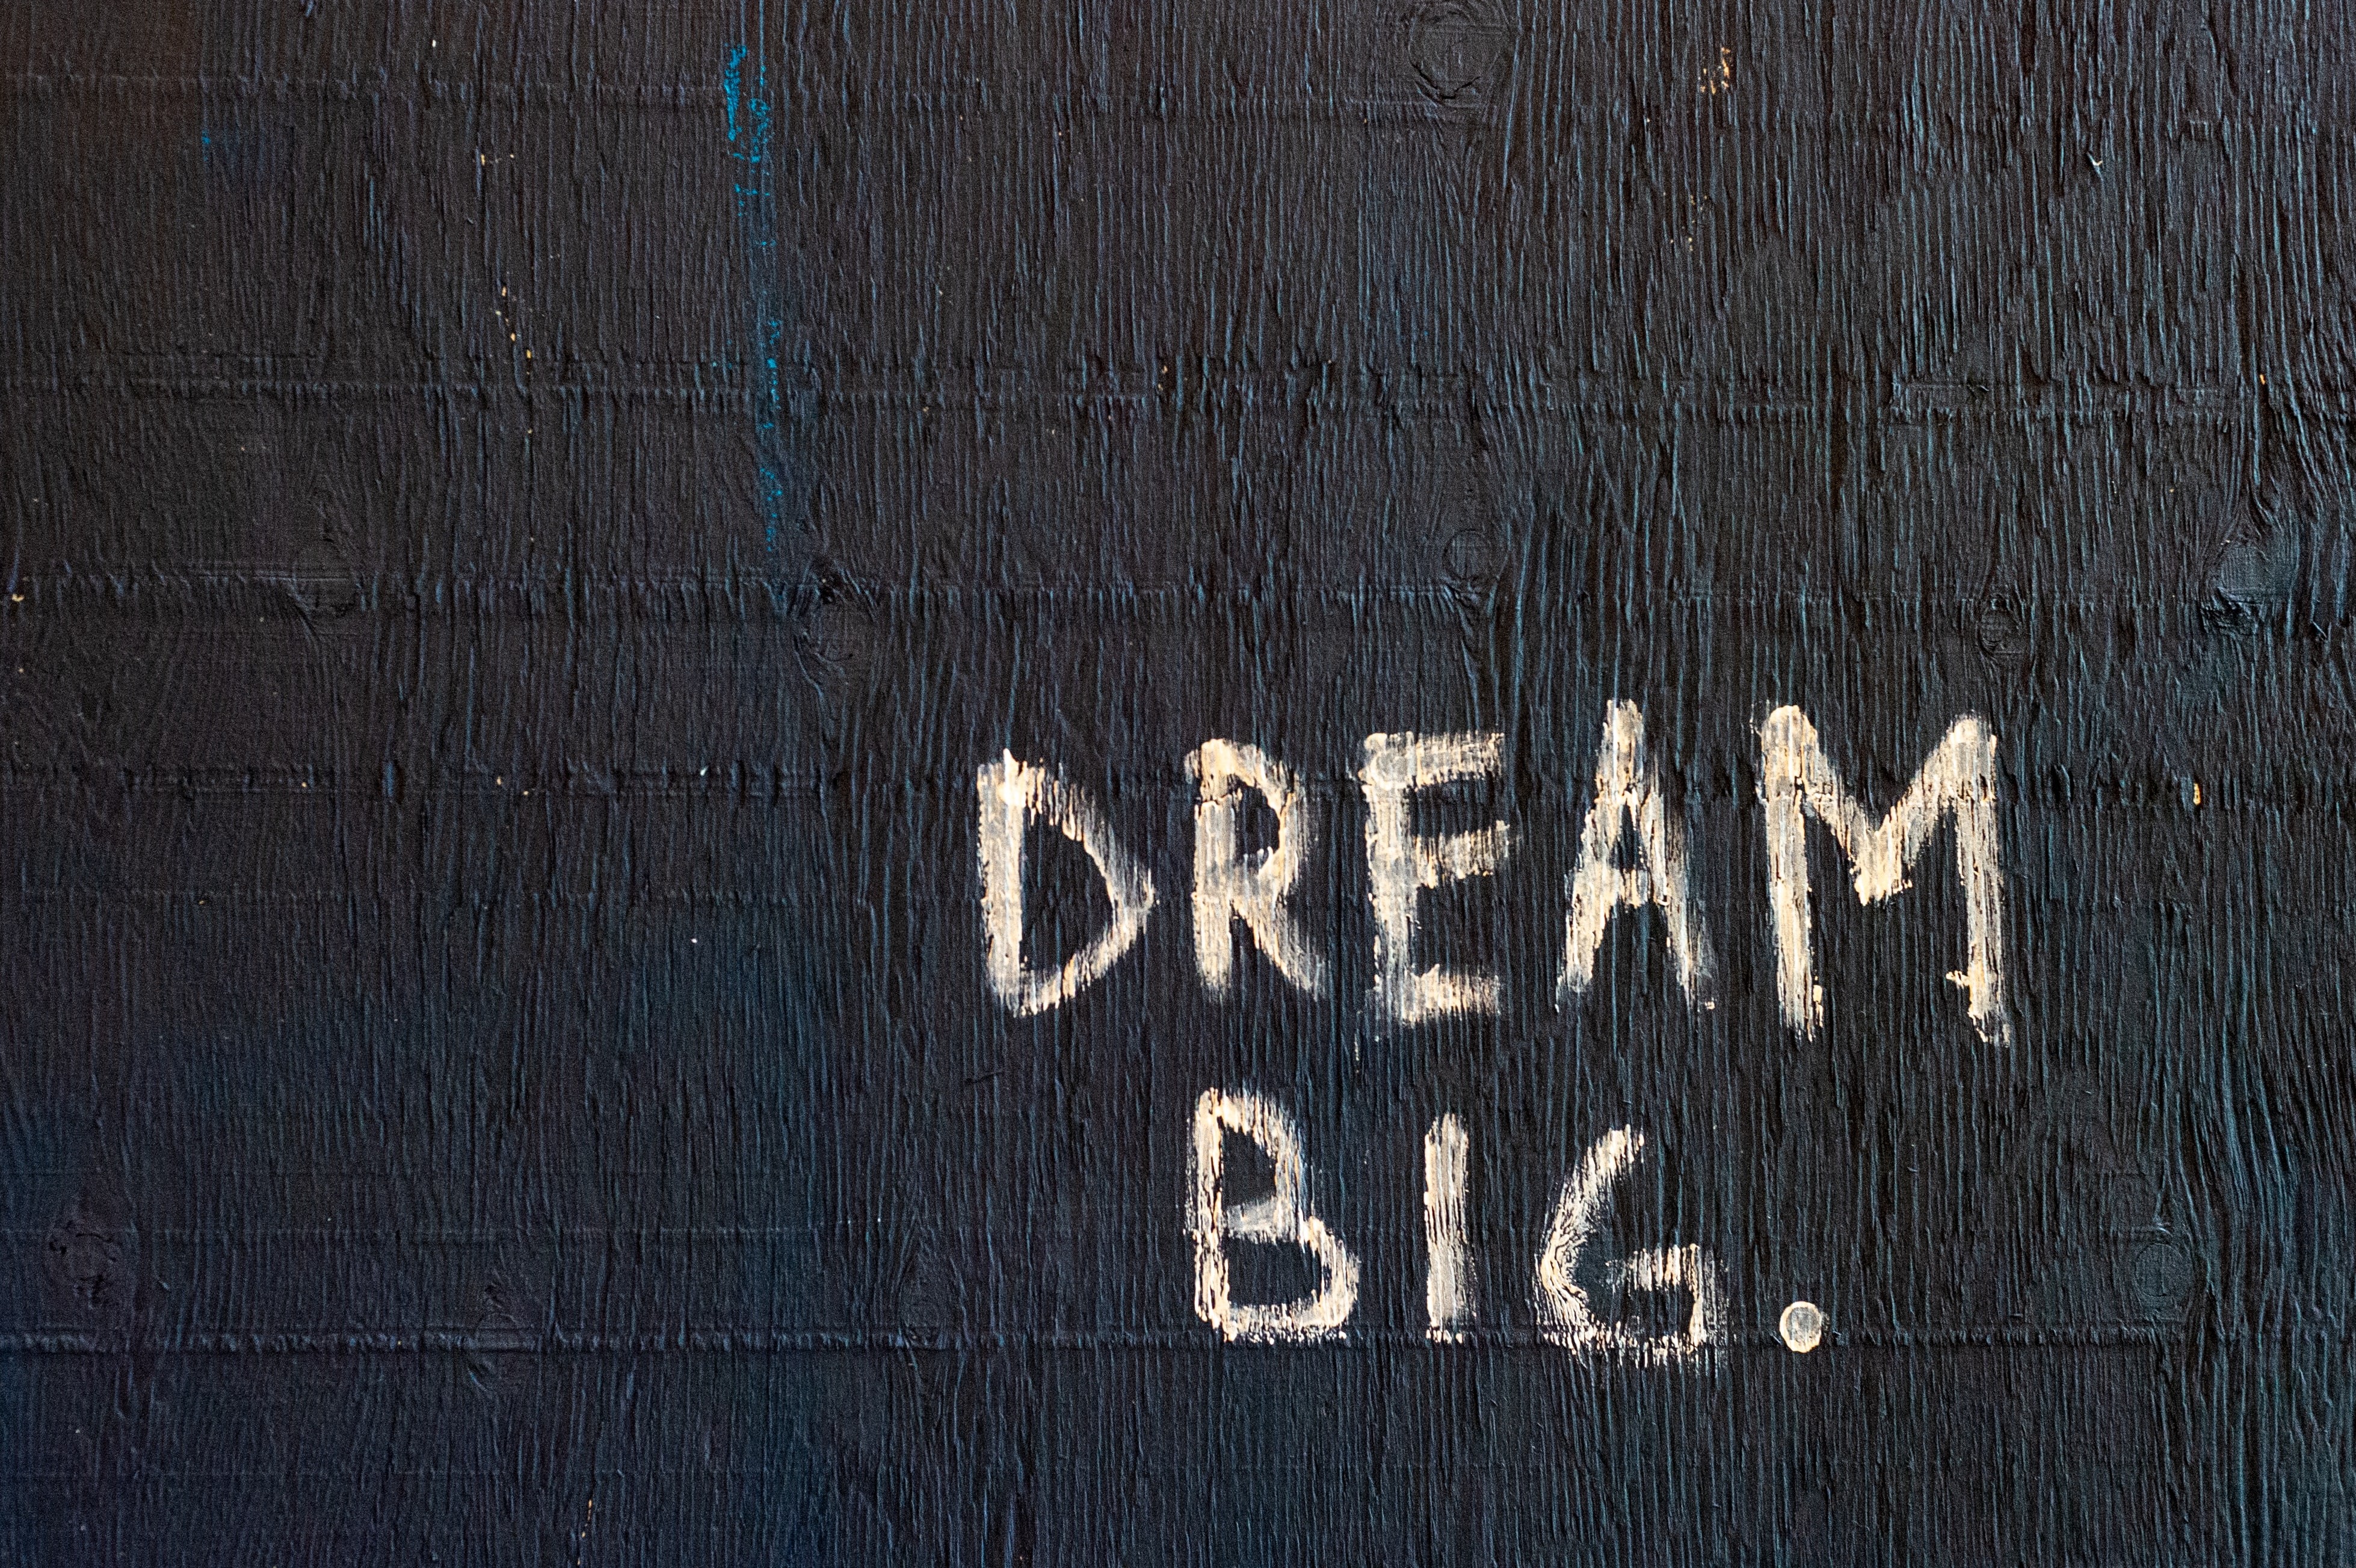 Schriftzug "Dream big" auf schwarzer Wand